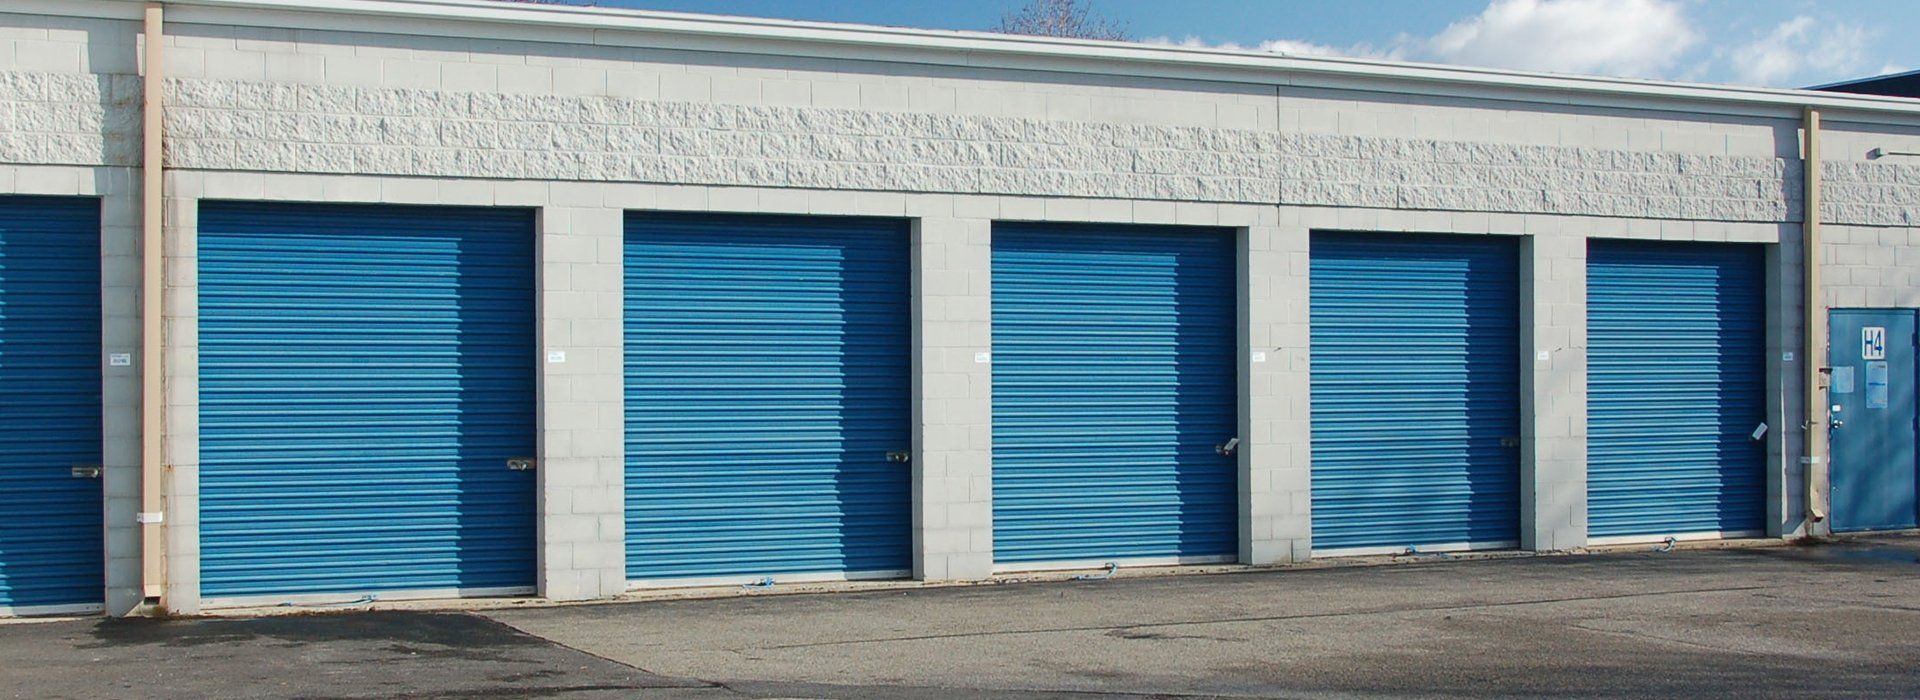 Commercial garage door